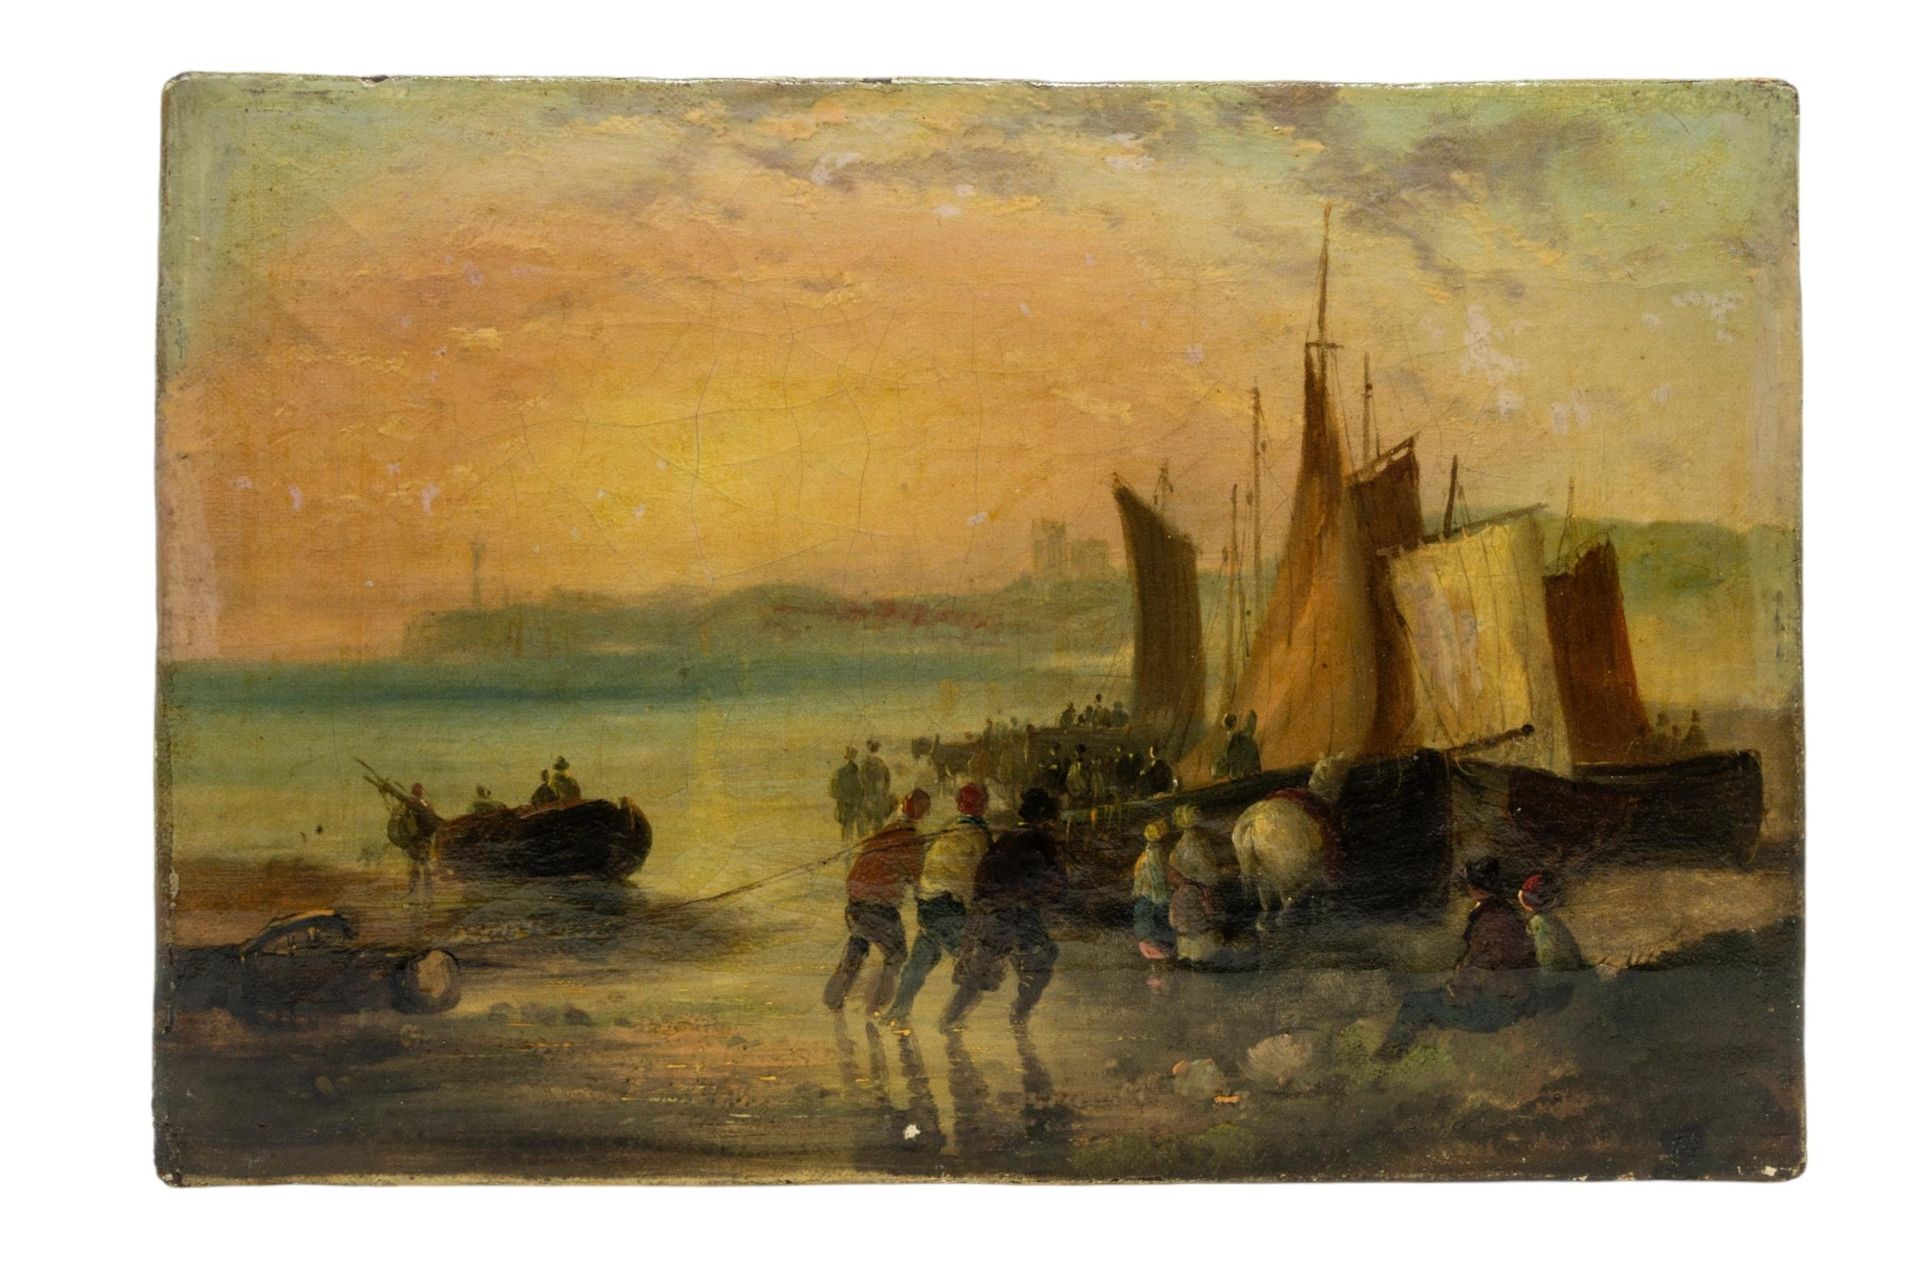 Null 帆布油画，大约 19 世纪早期，描绘日落时分渔夫捕获的鱼，未署名 17 x 25.5 厘米